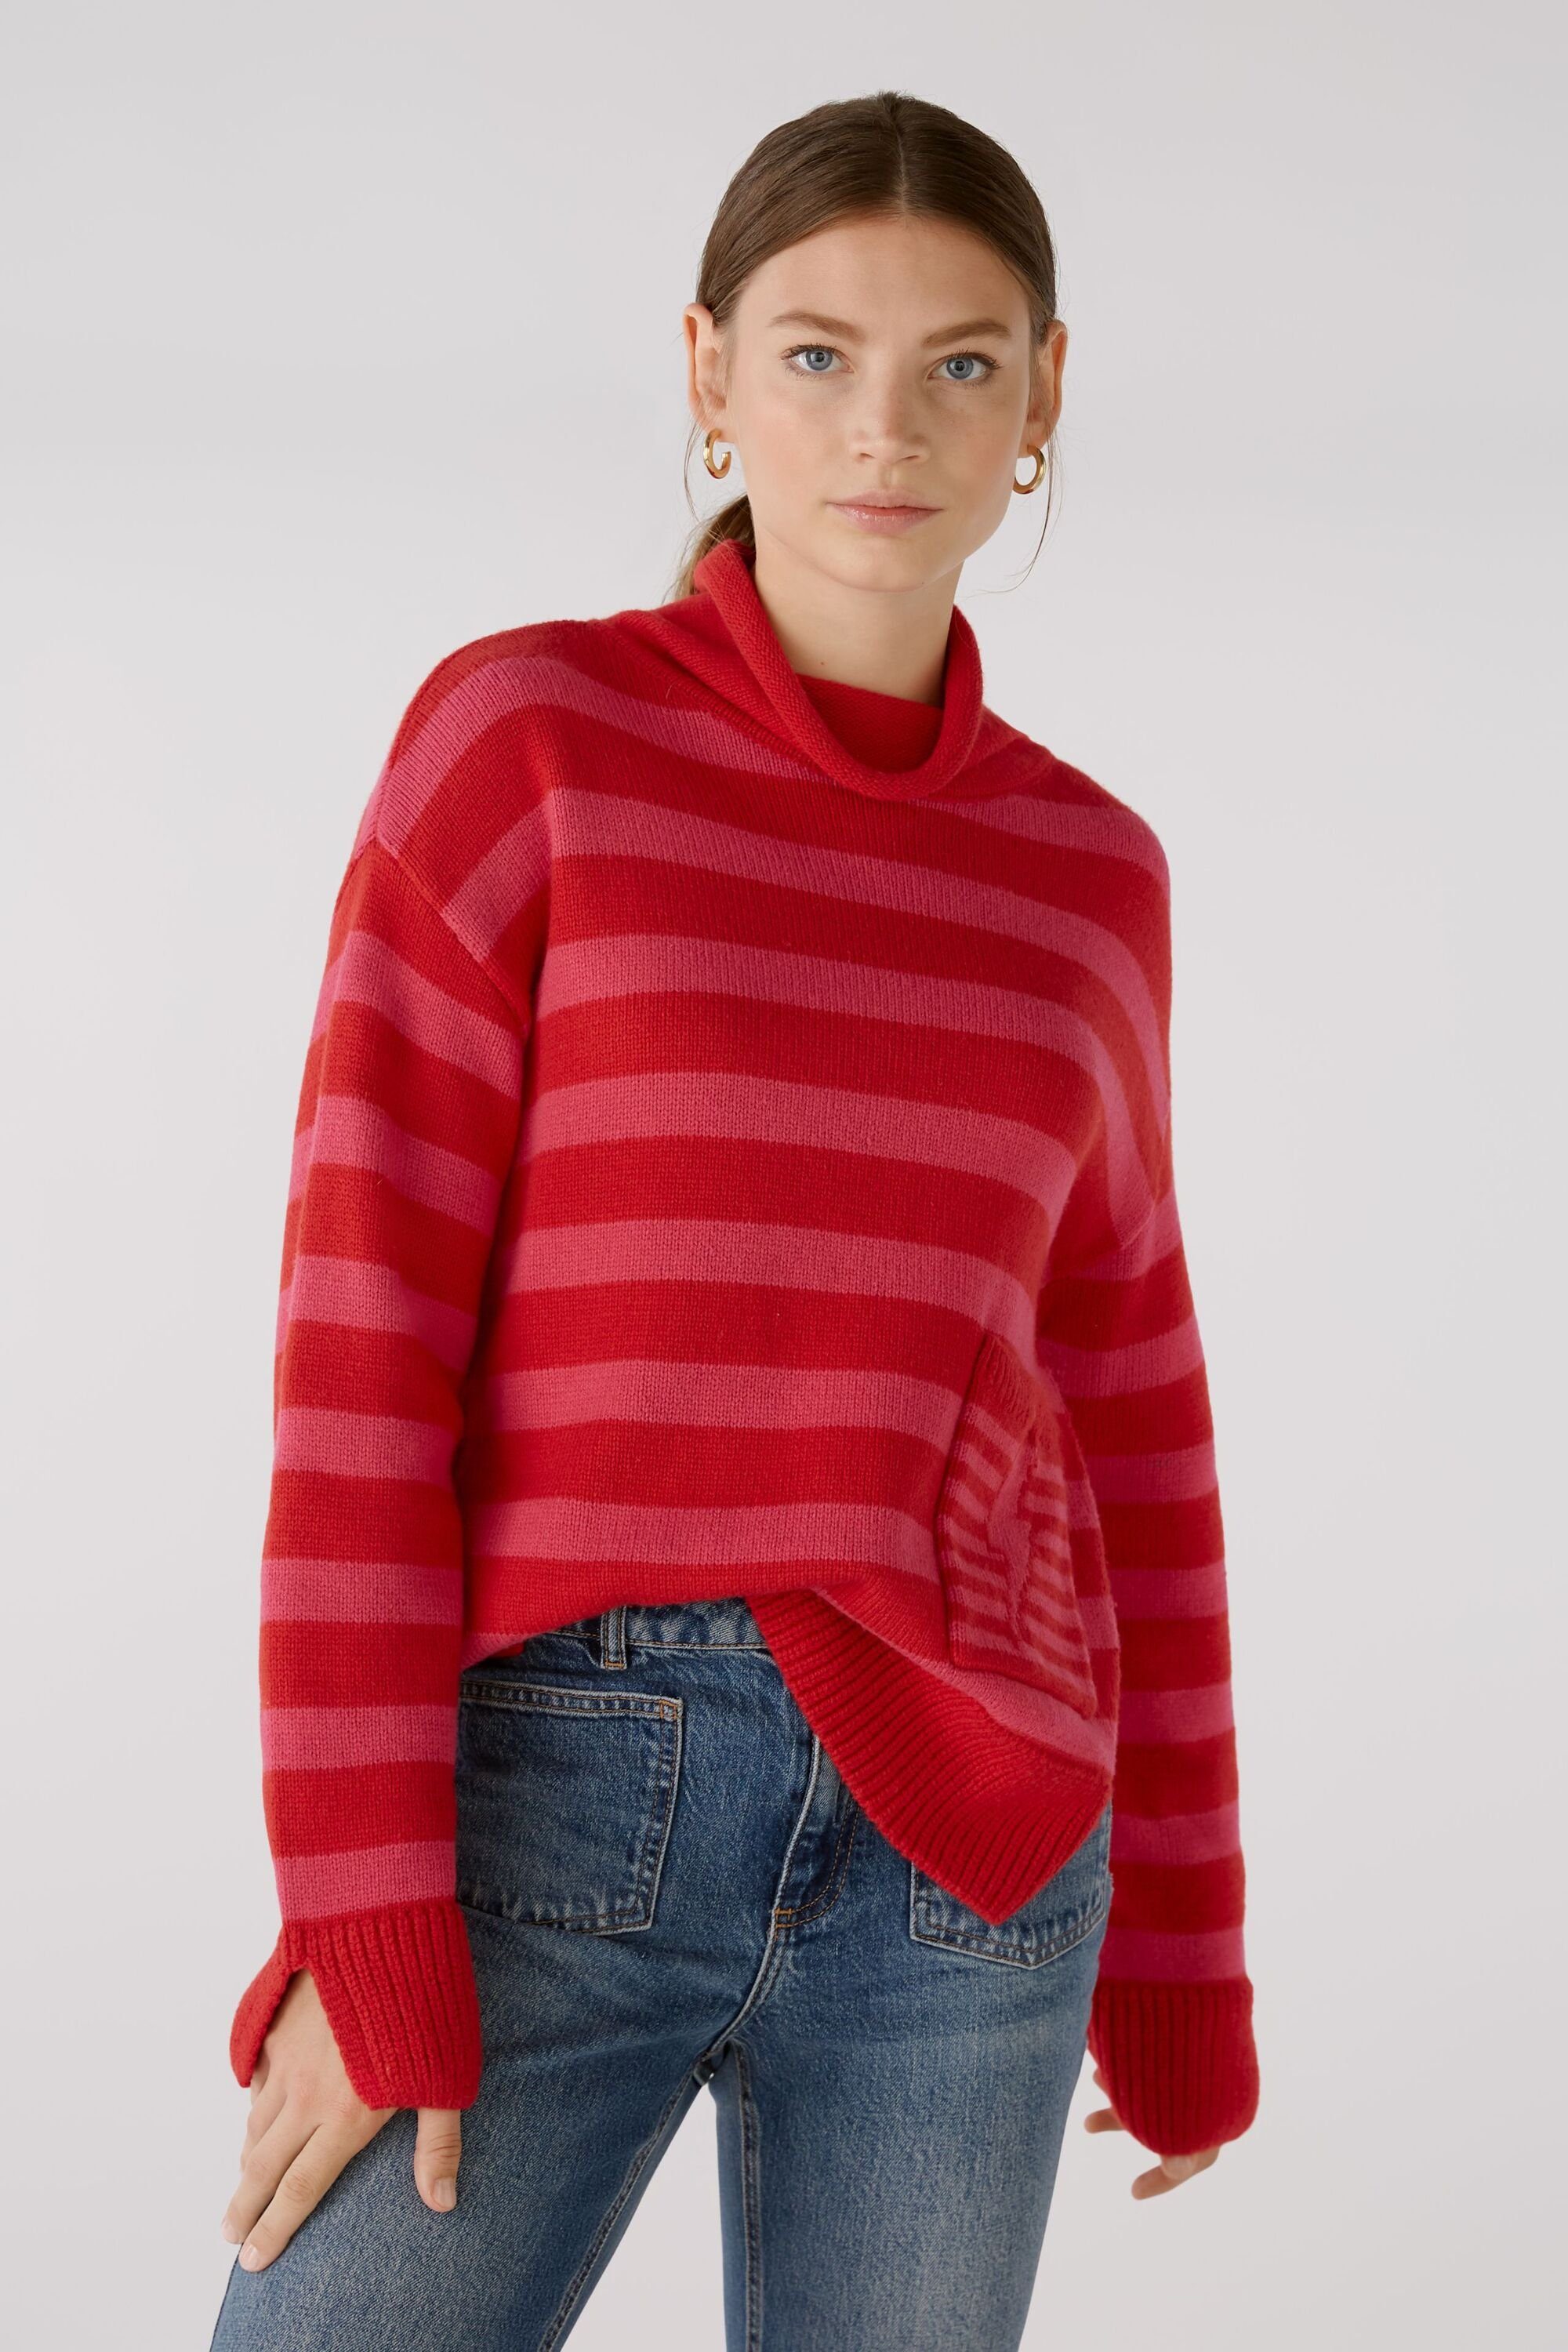 Pullover mit Baumwollmischung Oui Strickpullover Wolle